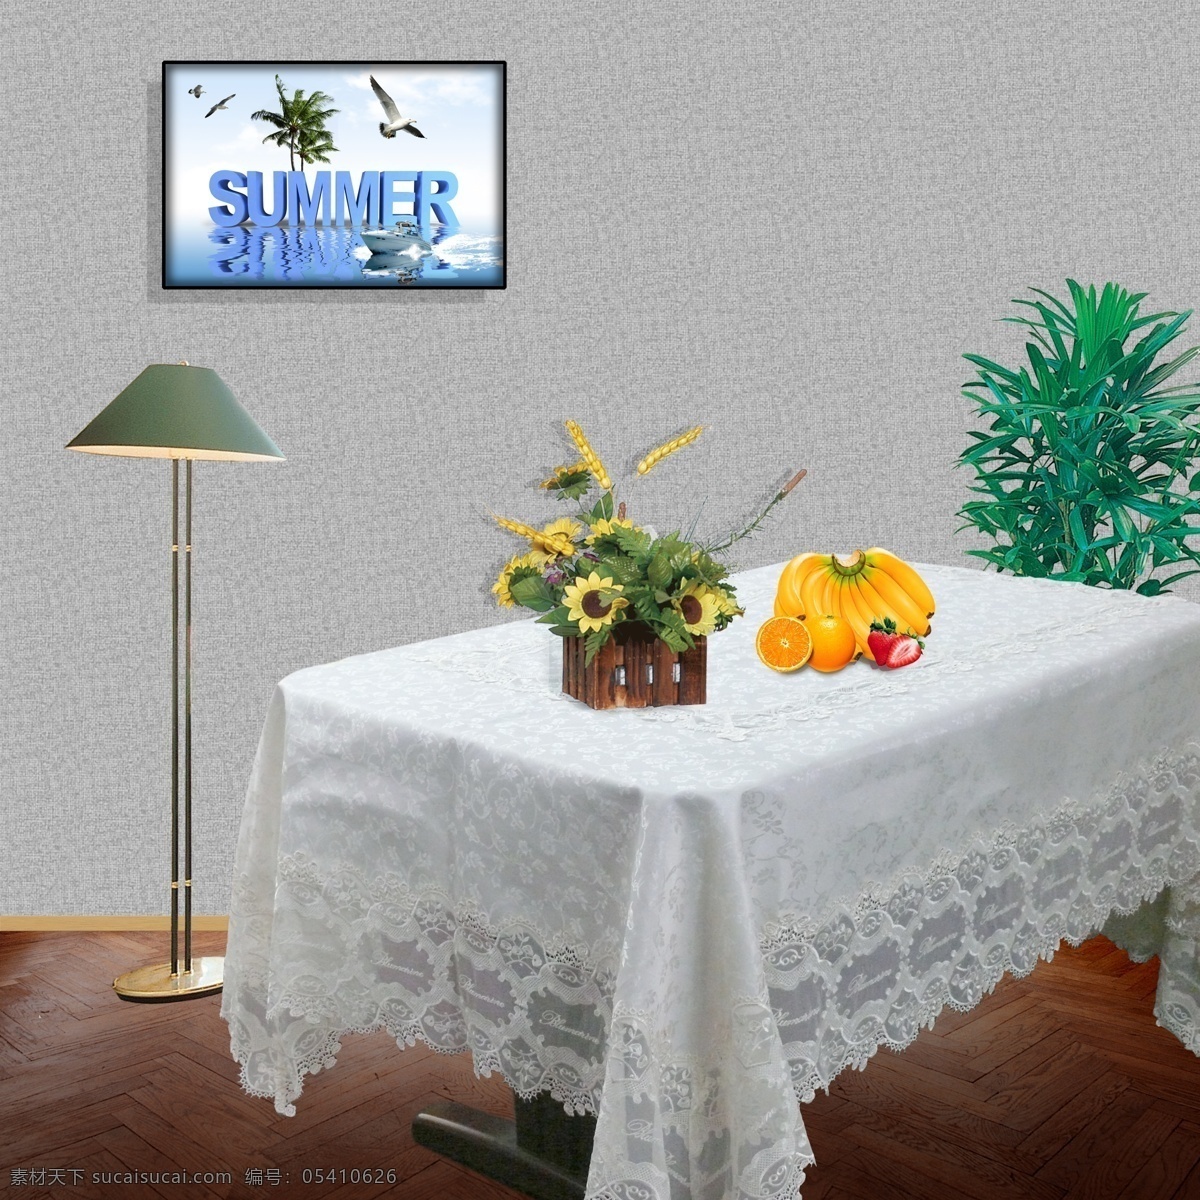 摆件 地板 花朵 环境设计 桔子 墙角 室内设计 台灯 桌布 台布素材下载 台布模板下载 台布 鲜花 相框 香蕉 源文件 家居装饰素材